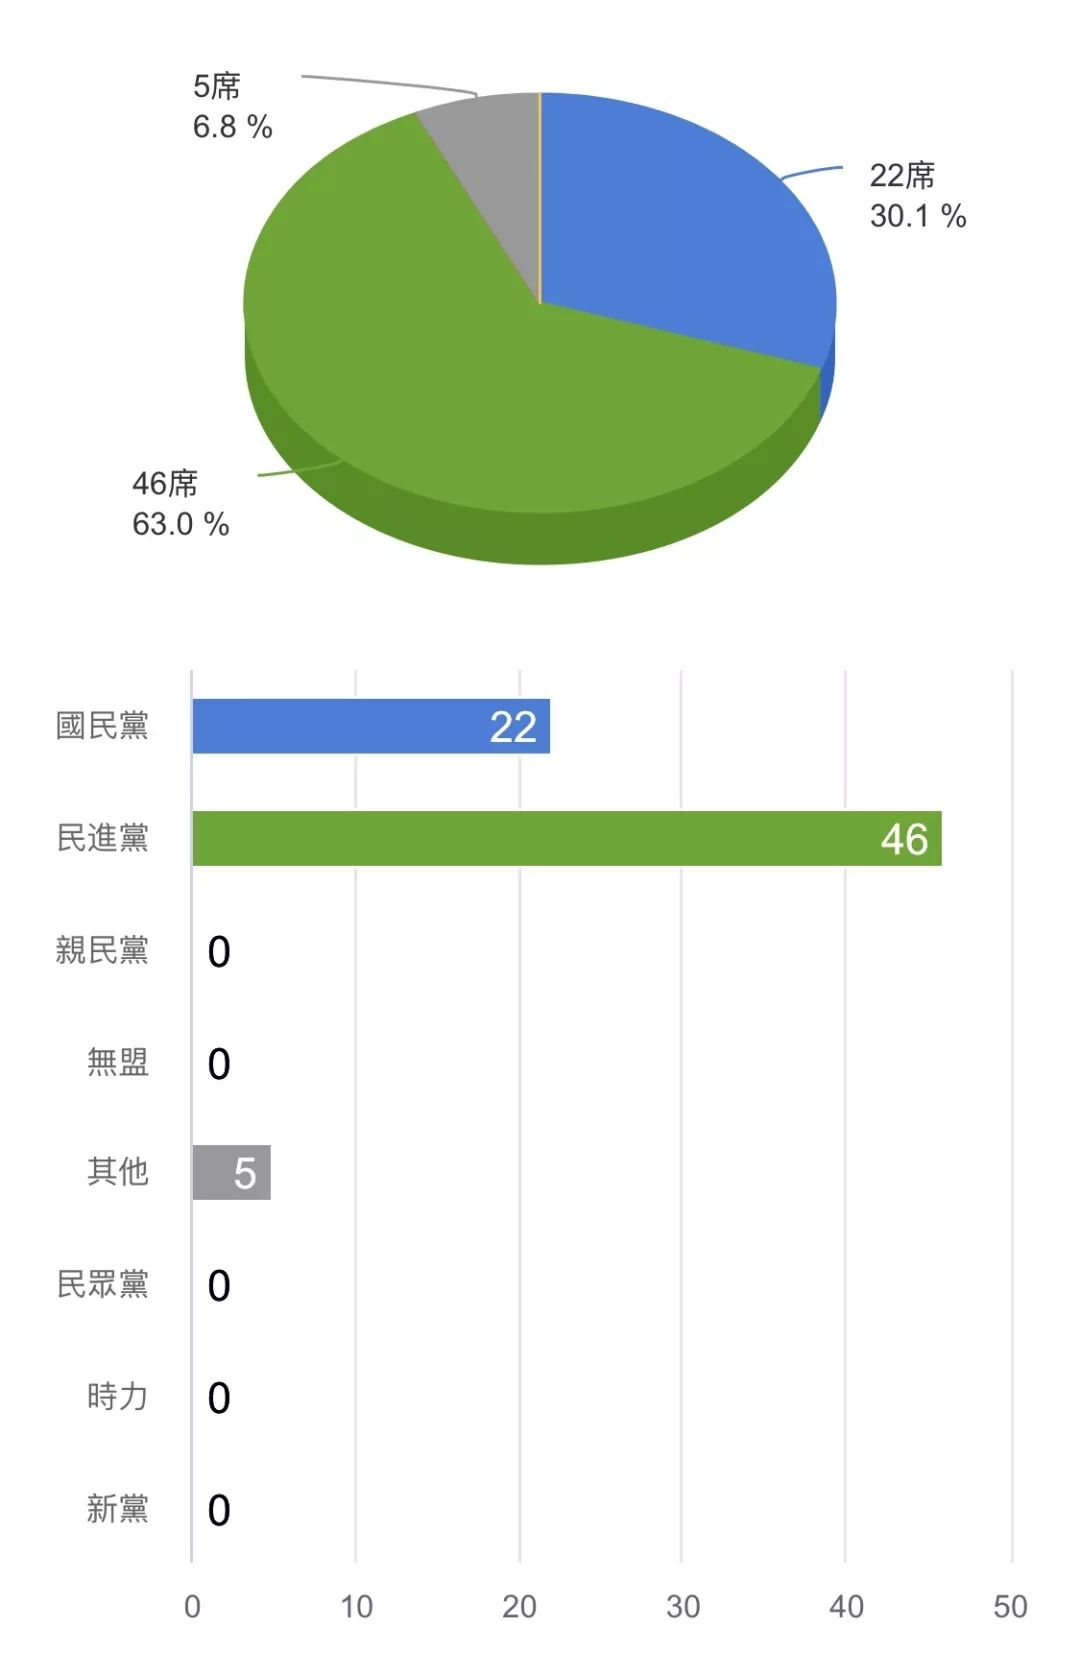 “立委”选举国民党惨败：民进党获46席，国民党获22席